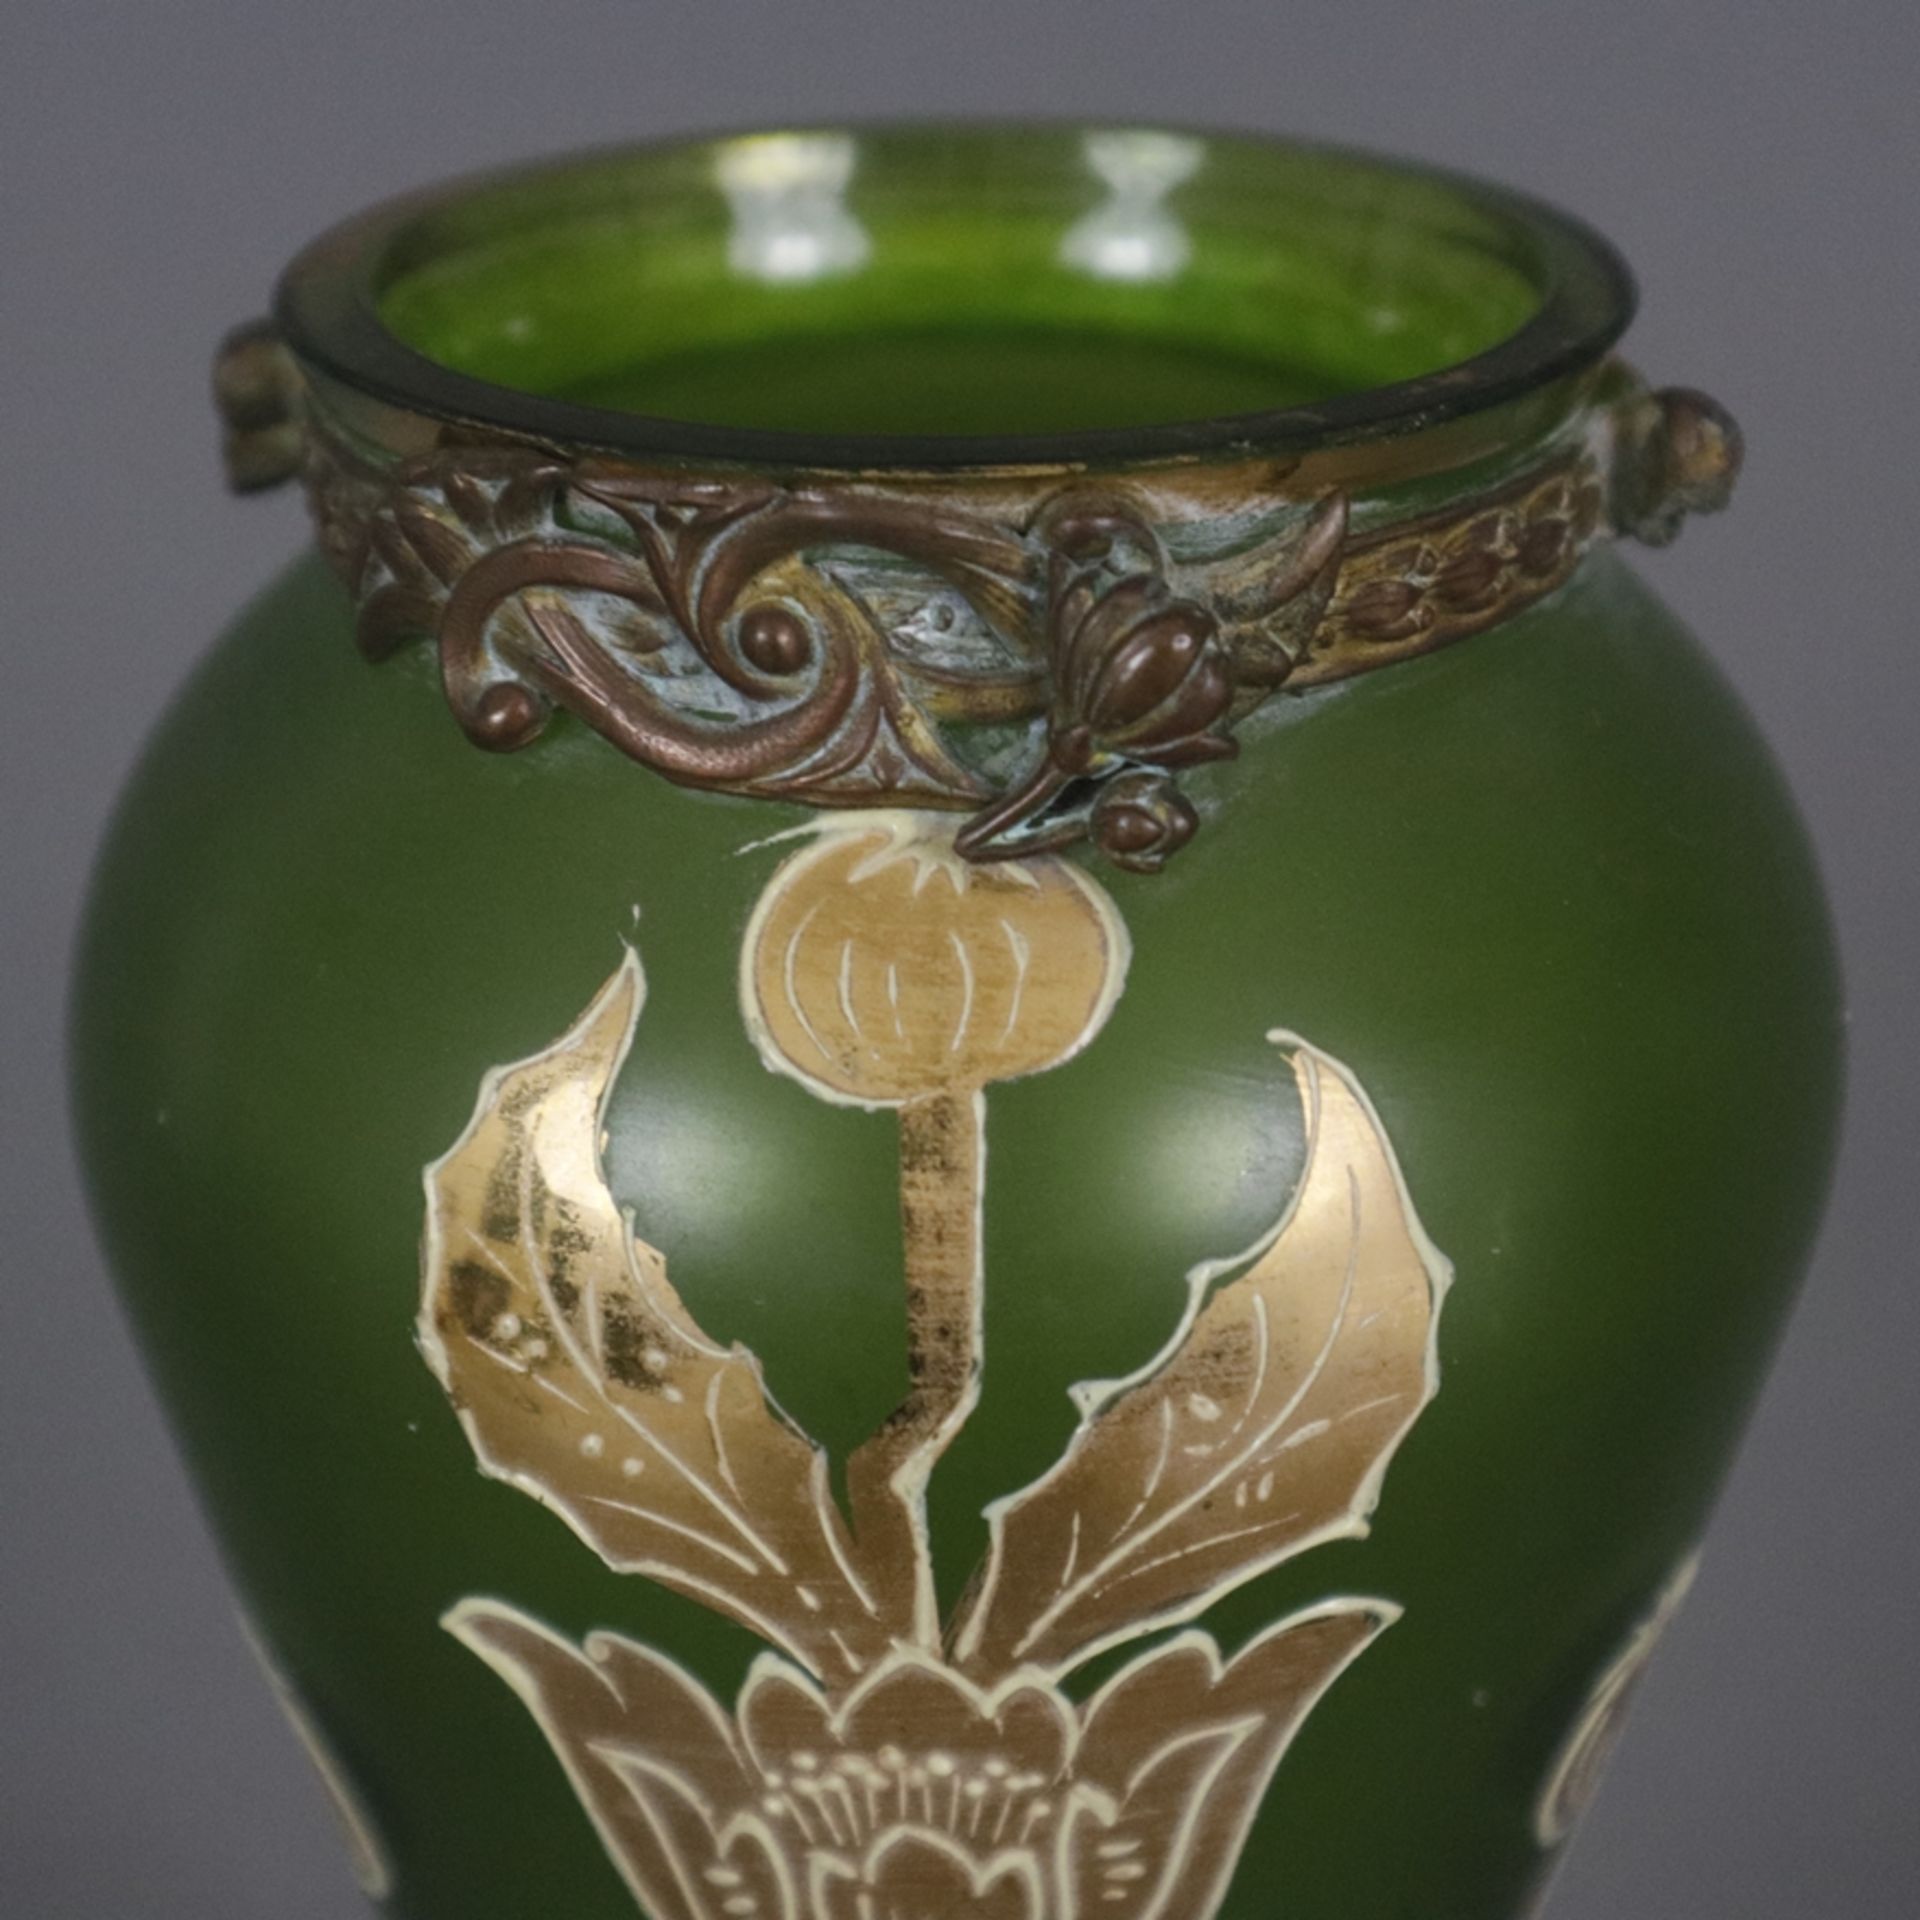 Jugendstil-Glasvase mit Metallmontur - wohl Frankreich um 1900, Klarglas mit grünem Unterfang, scha - Bild 2 aus 8